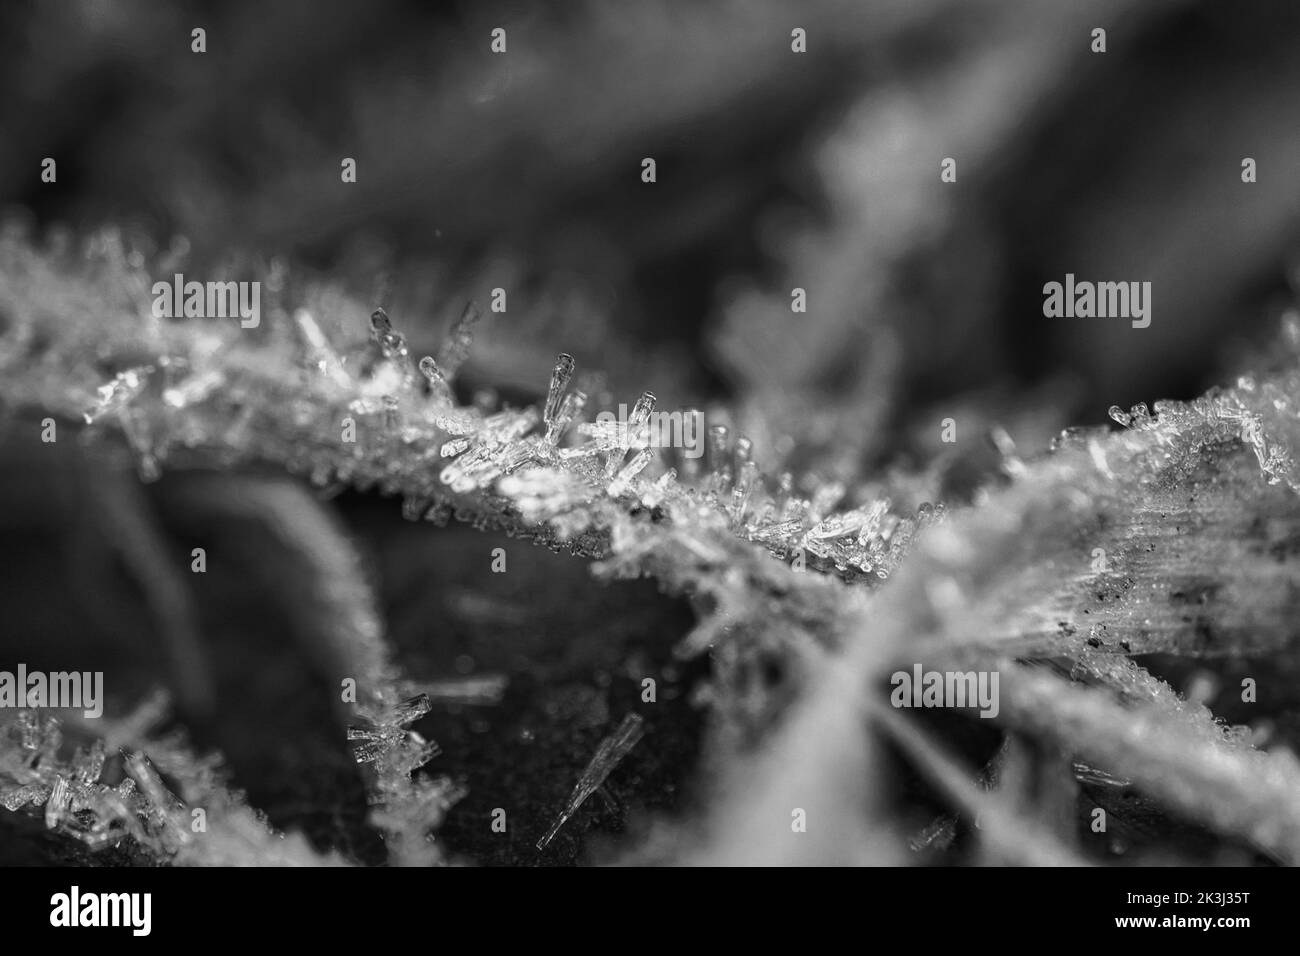 Cristaux de glace en noir et blanc, sur une lame d'herbe en hiver. Gros plan de l'eau gelée. Photo macro de la nature Banque D'Images